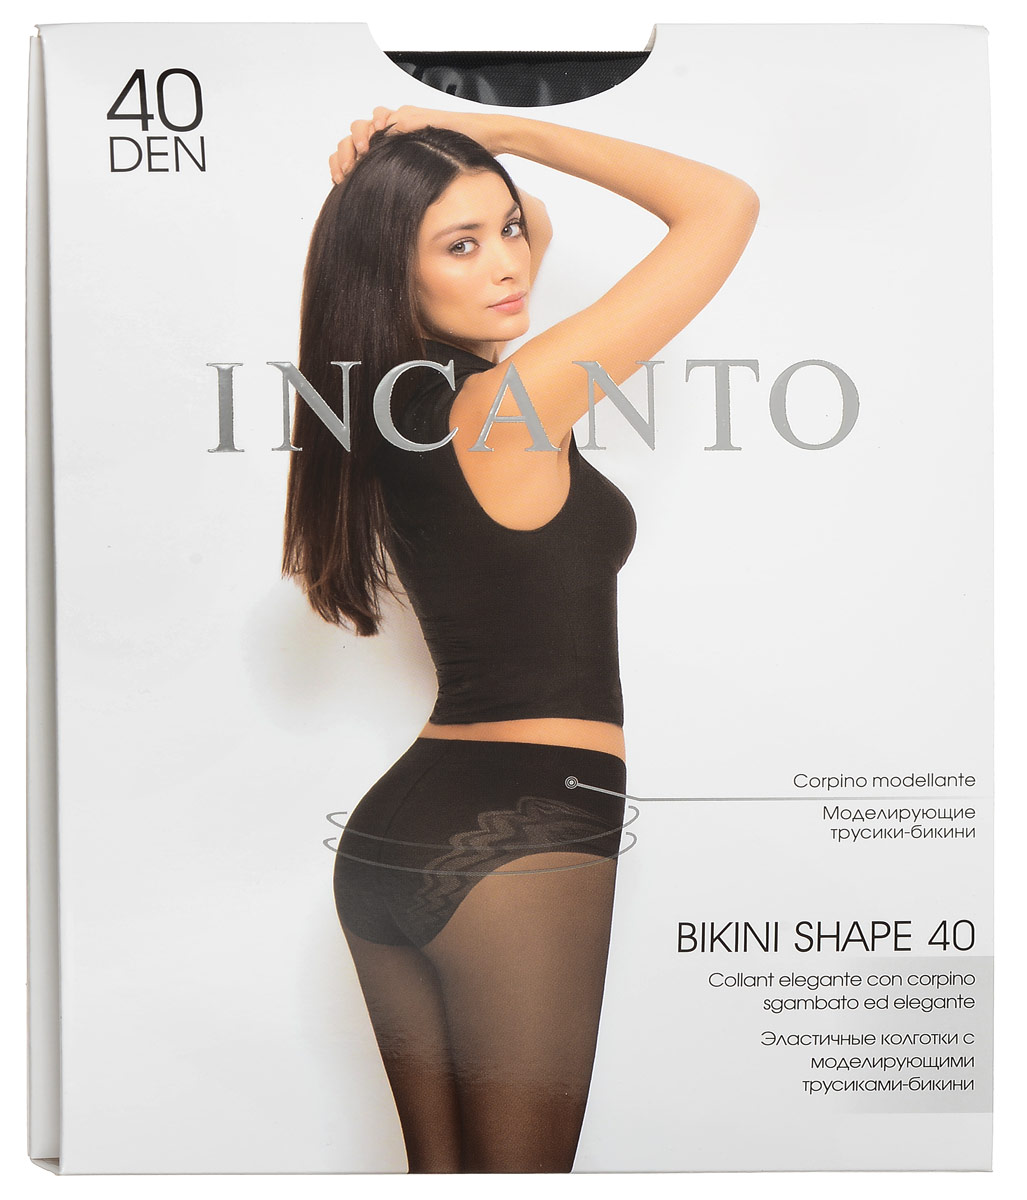 Колготки женские Incanto Bikini Shape 40, цвет: Nero (черный). 19778. Размер 3 (44/46)